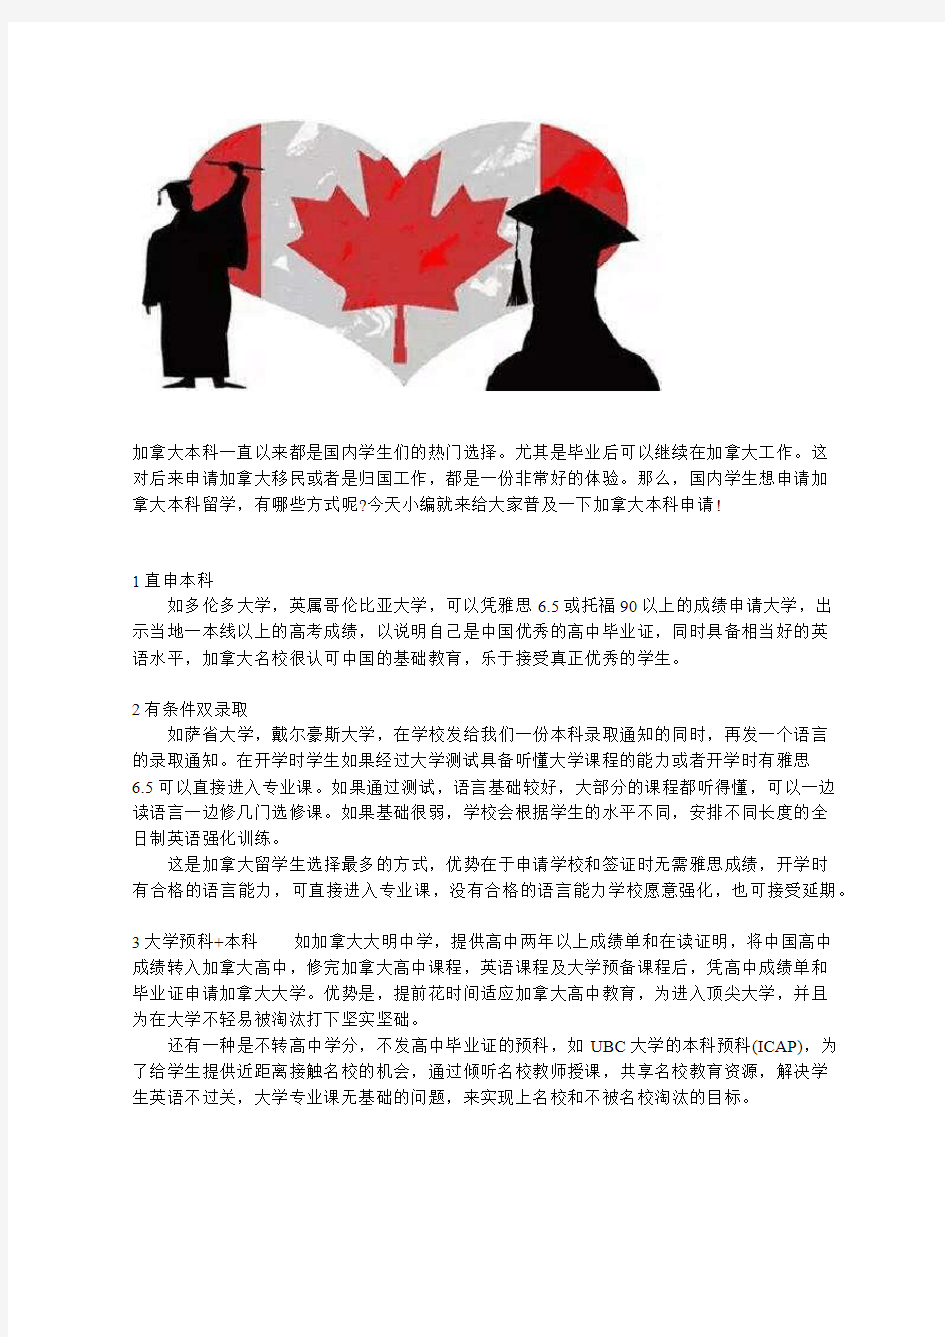 赴加拿大就读大学本科,中国留学生申请方案全方位解析